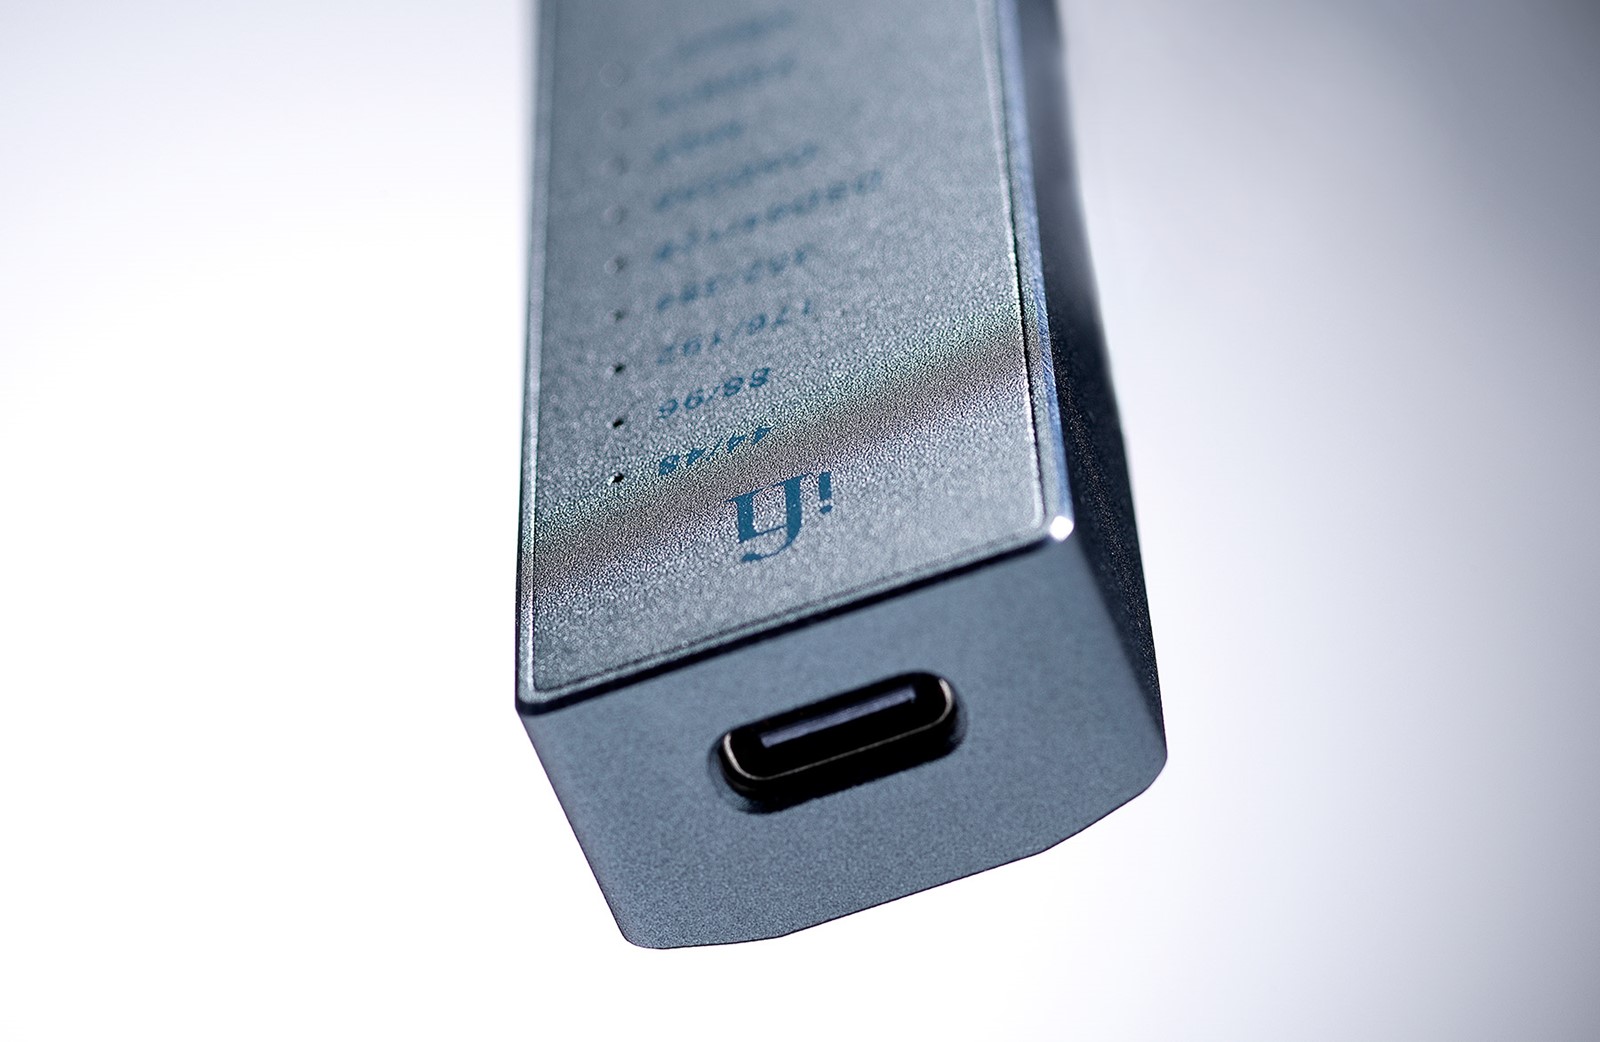 Jedini ulaz, USB-C, nalazi se na gornjem rubu uređaja. Osim za prijenos audiosignala, koristi se i za napajanje uređaja